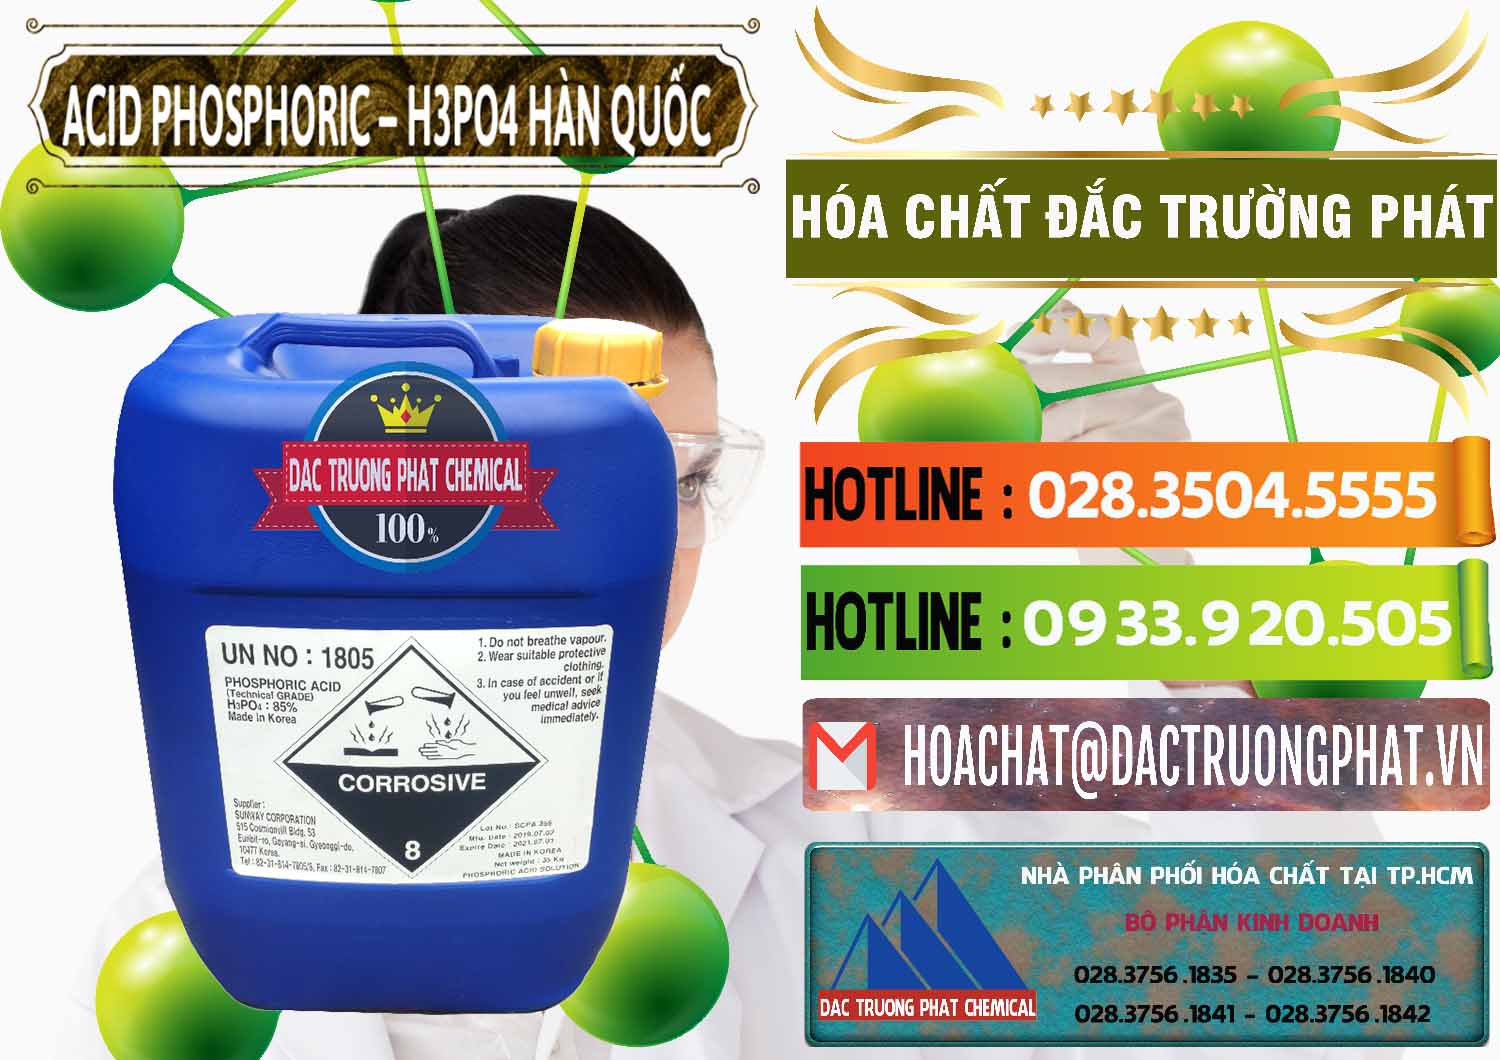 Đơn vị kinh doanh và bán Acid Phosphoric – H3PO4 85% Can Xanh Hàn Quốc Korea - 0016 - Công ty chuyên kinh doanh và phân phối hóa chất tại TP.HCM - cungcaphoachat.com.vn